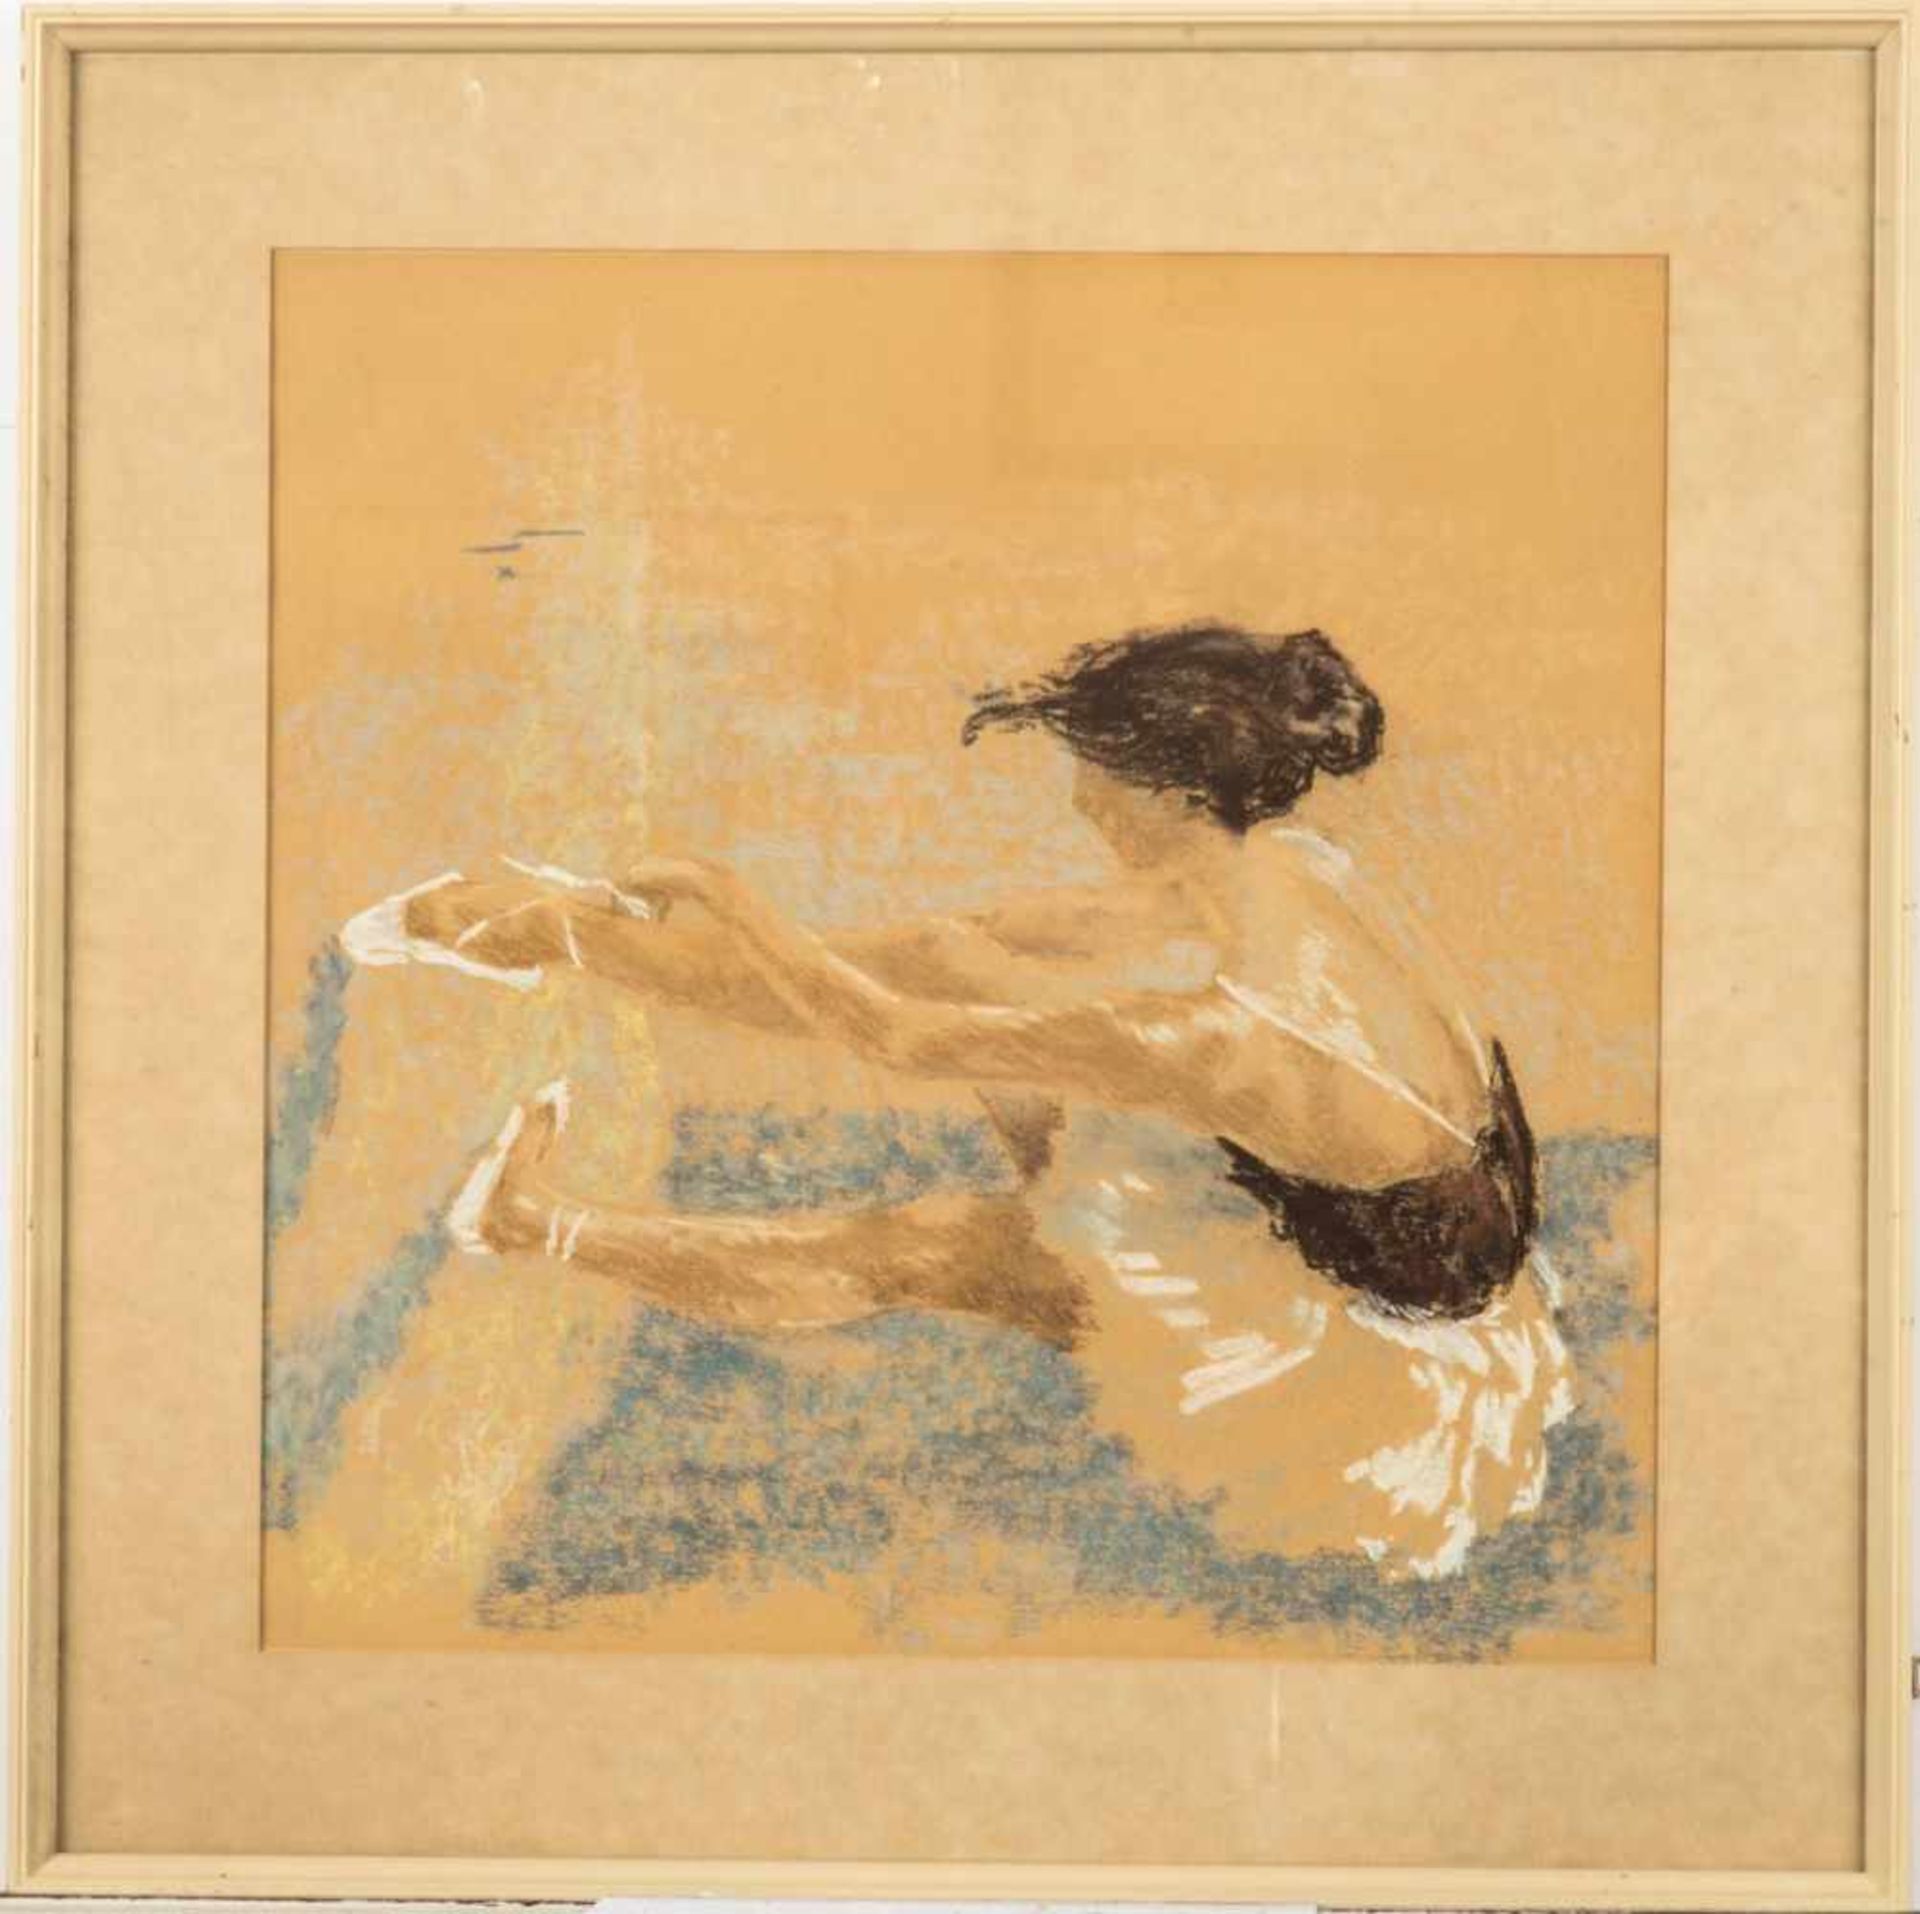 BalletttänzerinKreide Pastell Malerei, 41 x 40 cm, unter Glas gerahmt 53,5 x 53,5 cm.